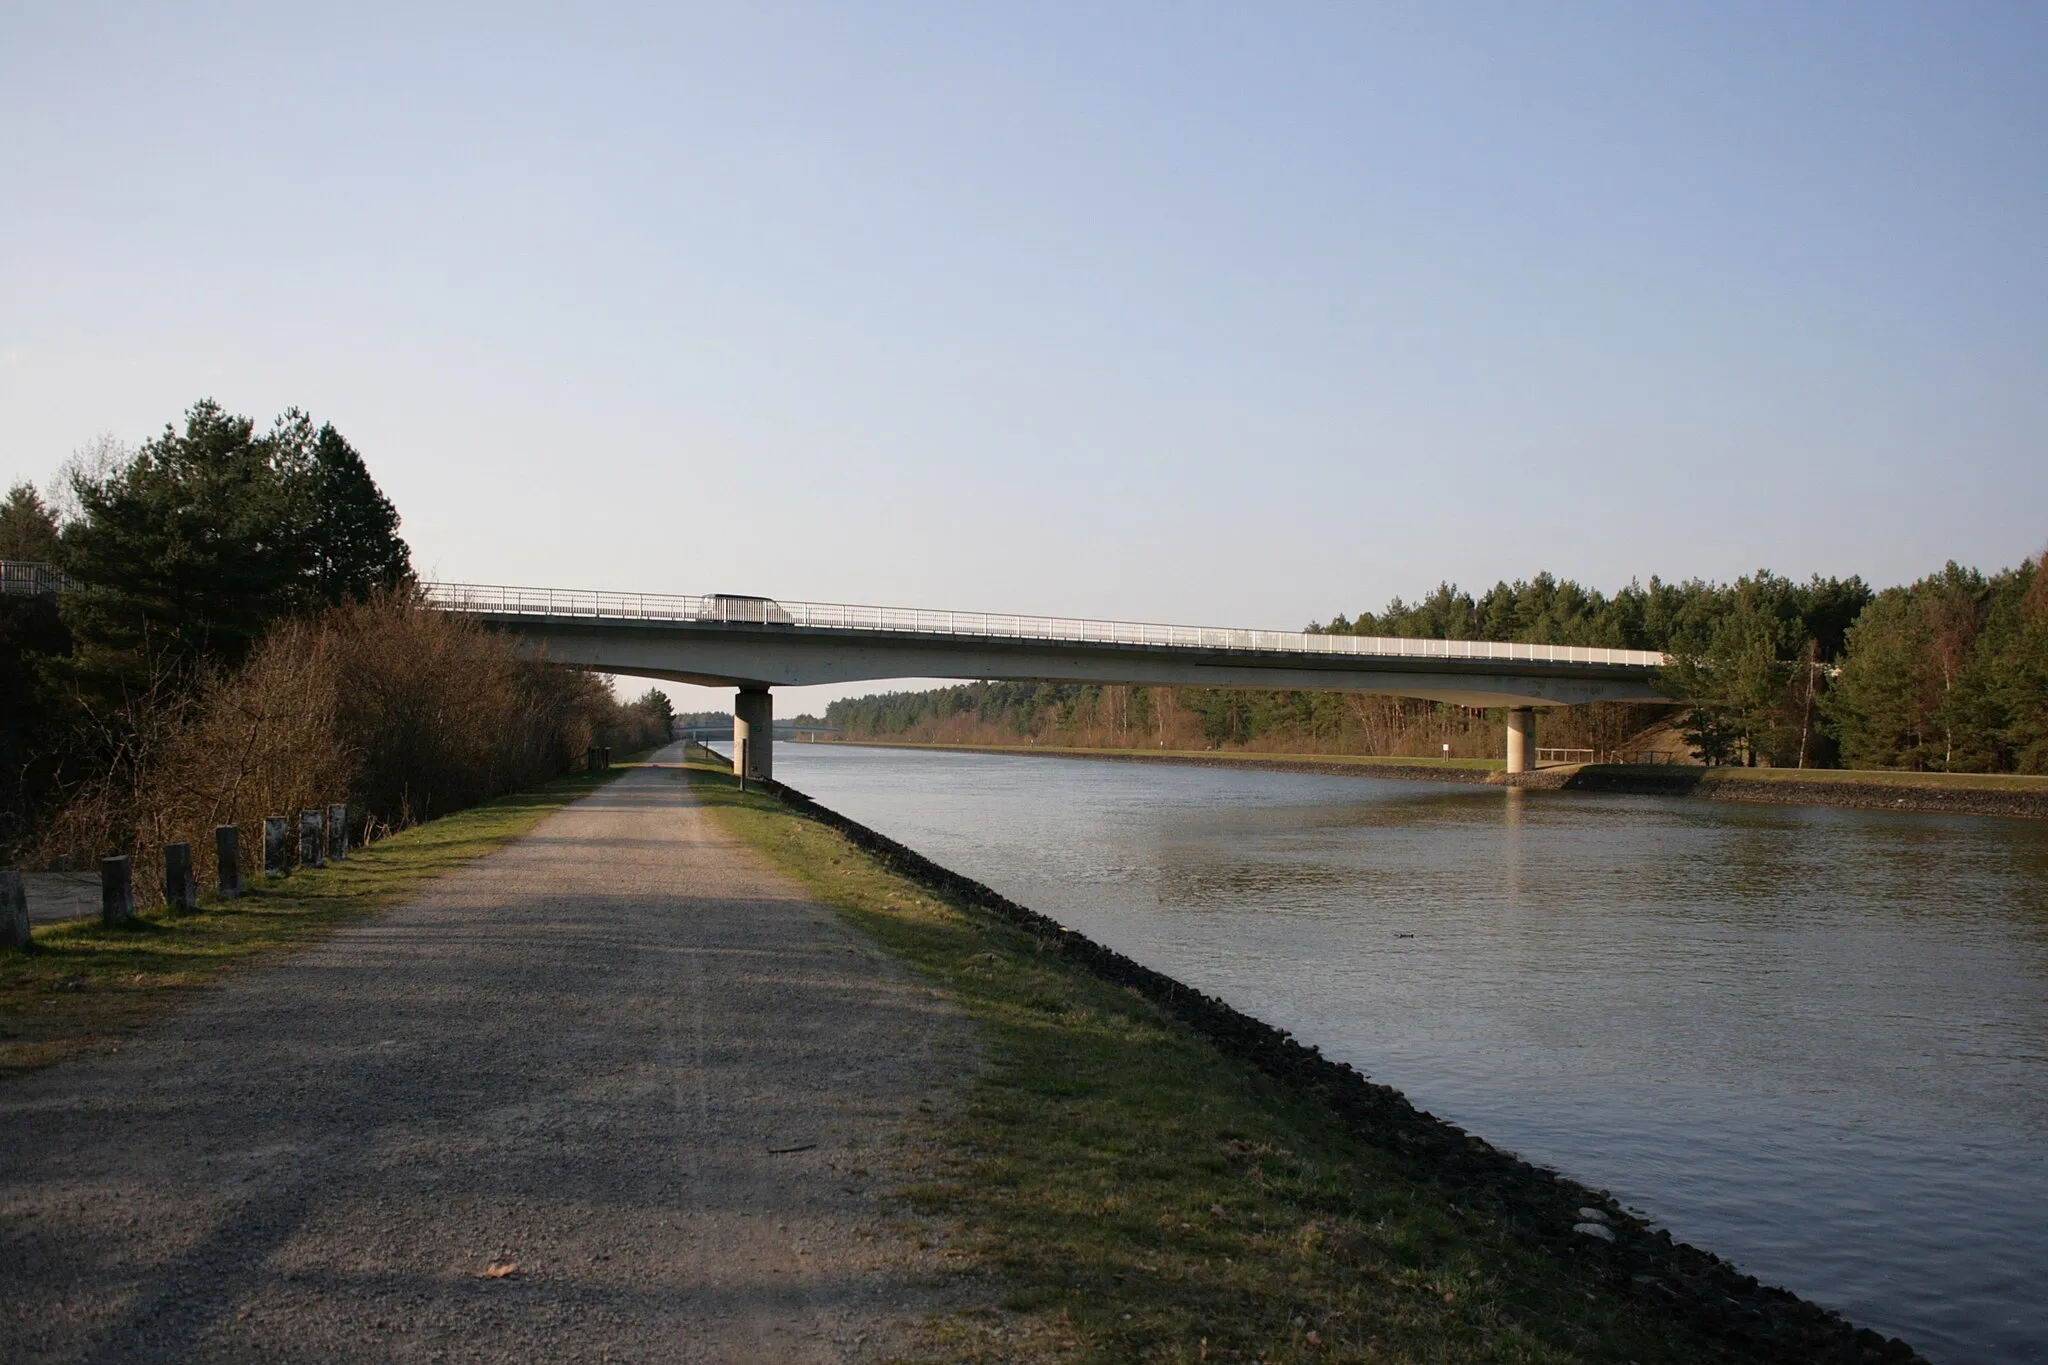 Photo showing: Brücke der Dahlenburger Straße über den Elbe-Seitenkanal in Bad Bevensen